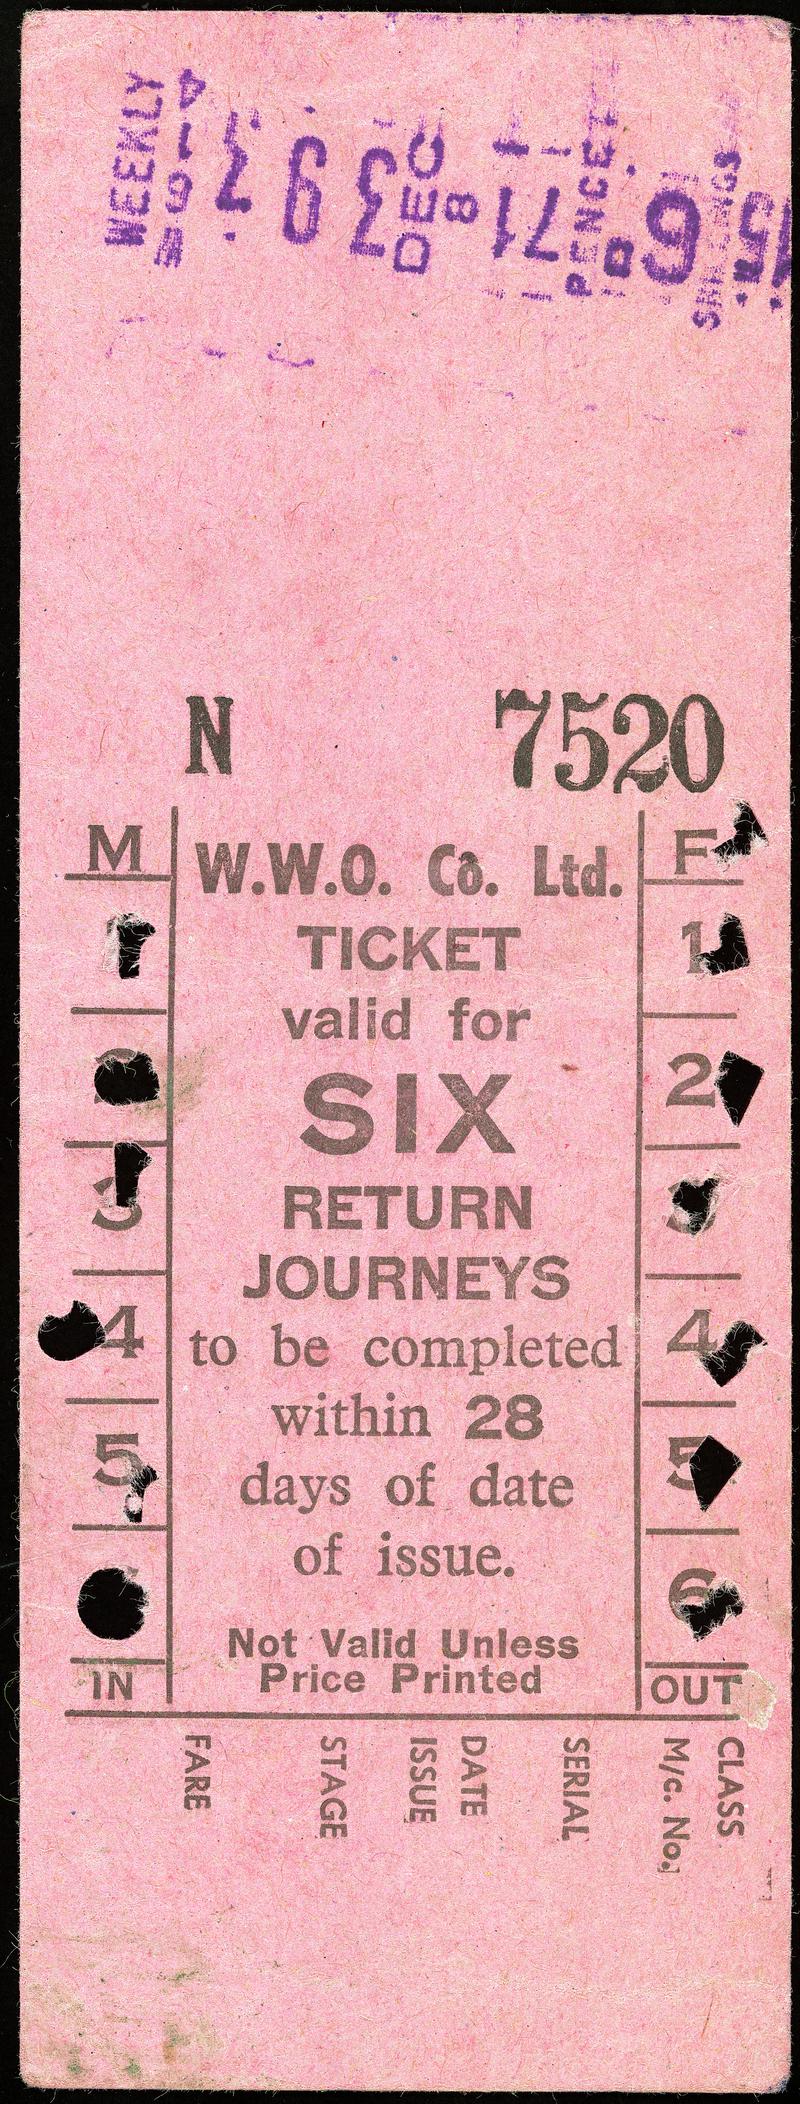 Western Welsh O. Co. Ltd. bus ticket